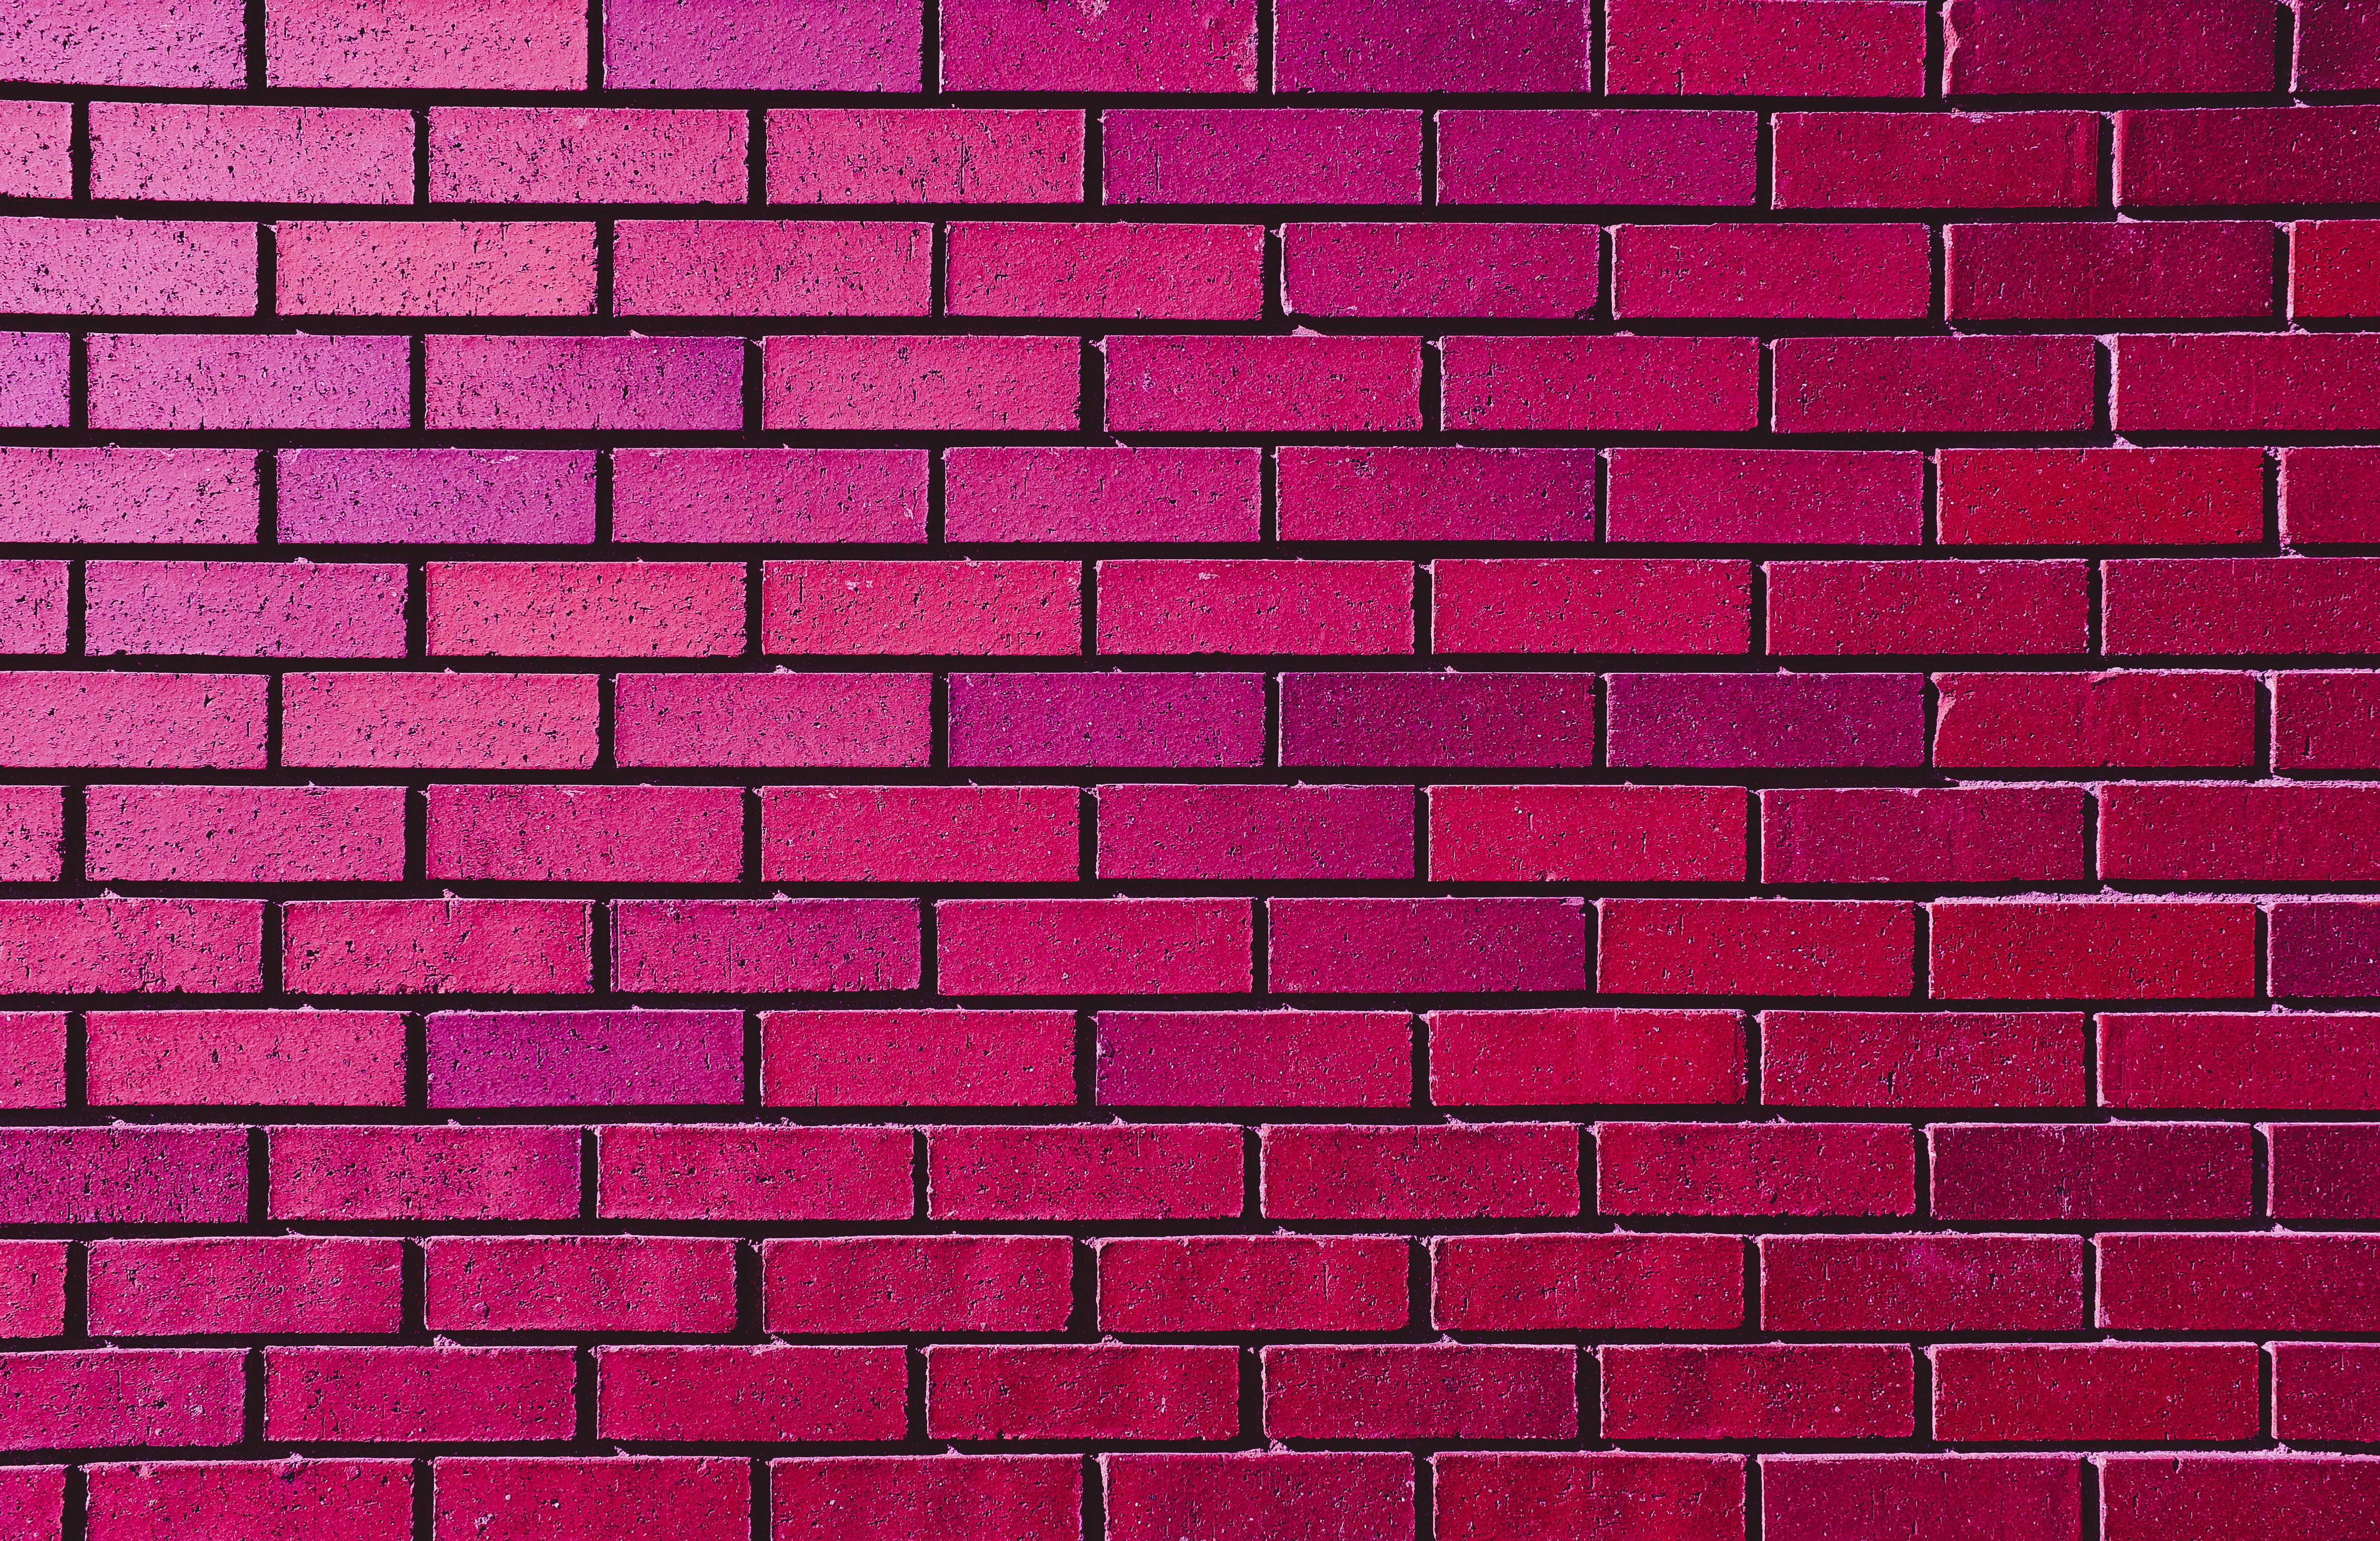 Desktop Backgrounds Brick shades, violet, pink, wall